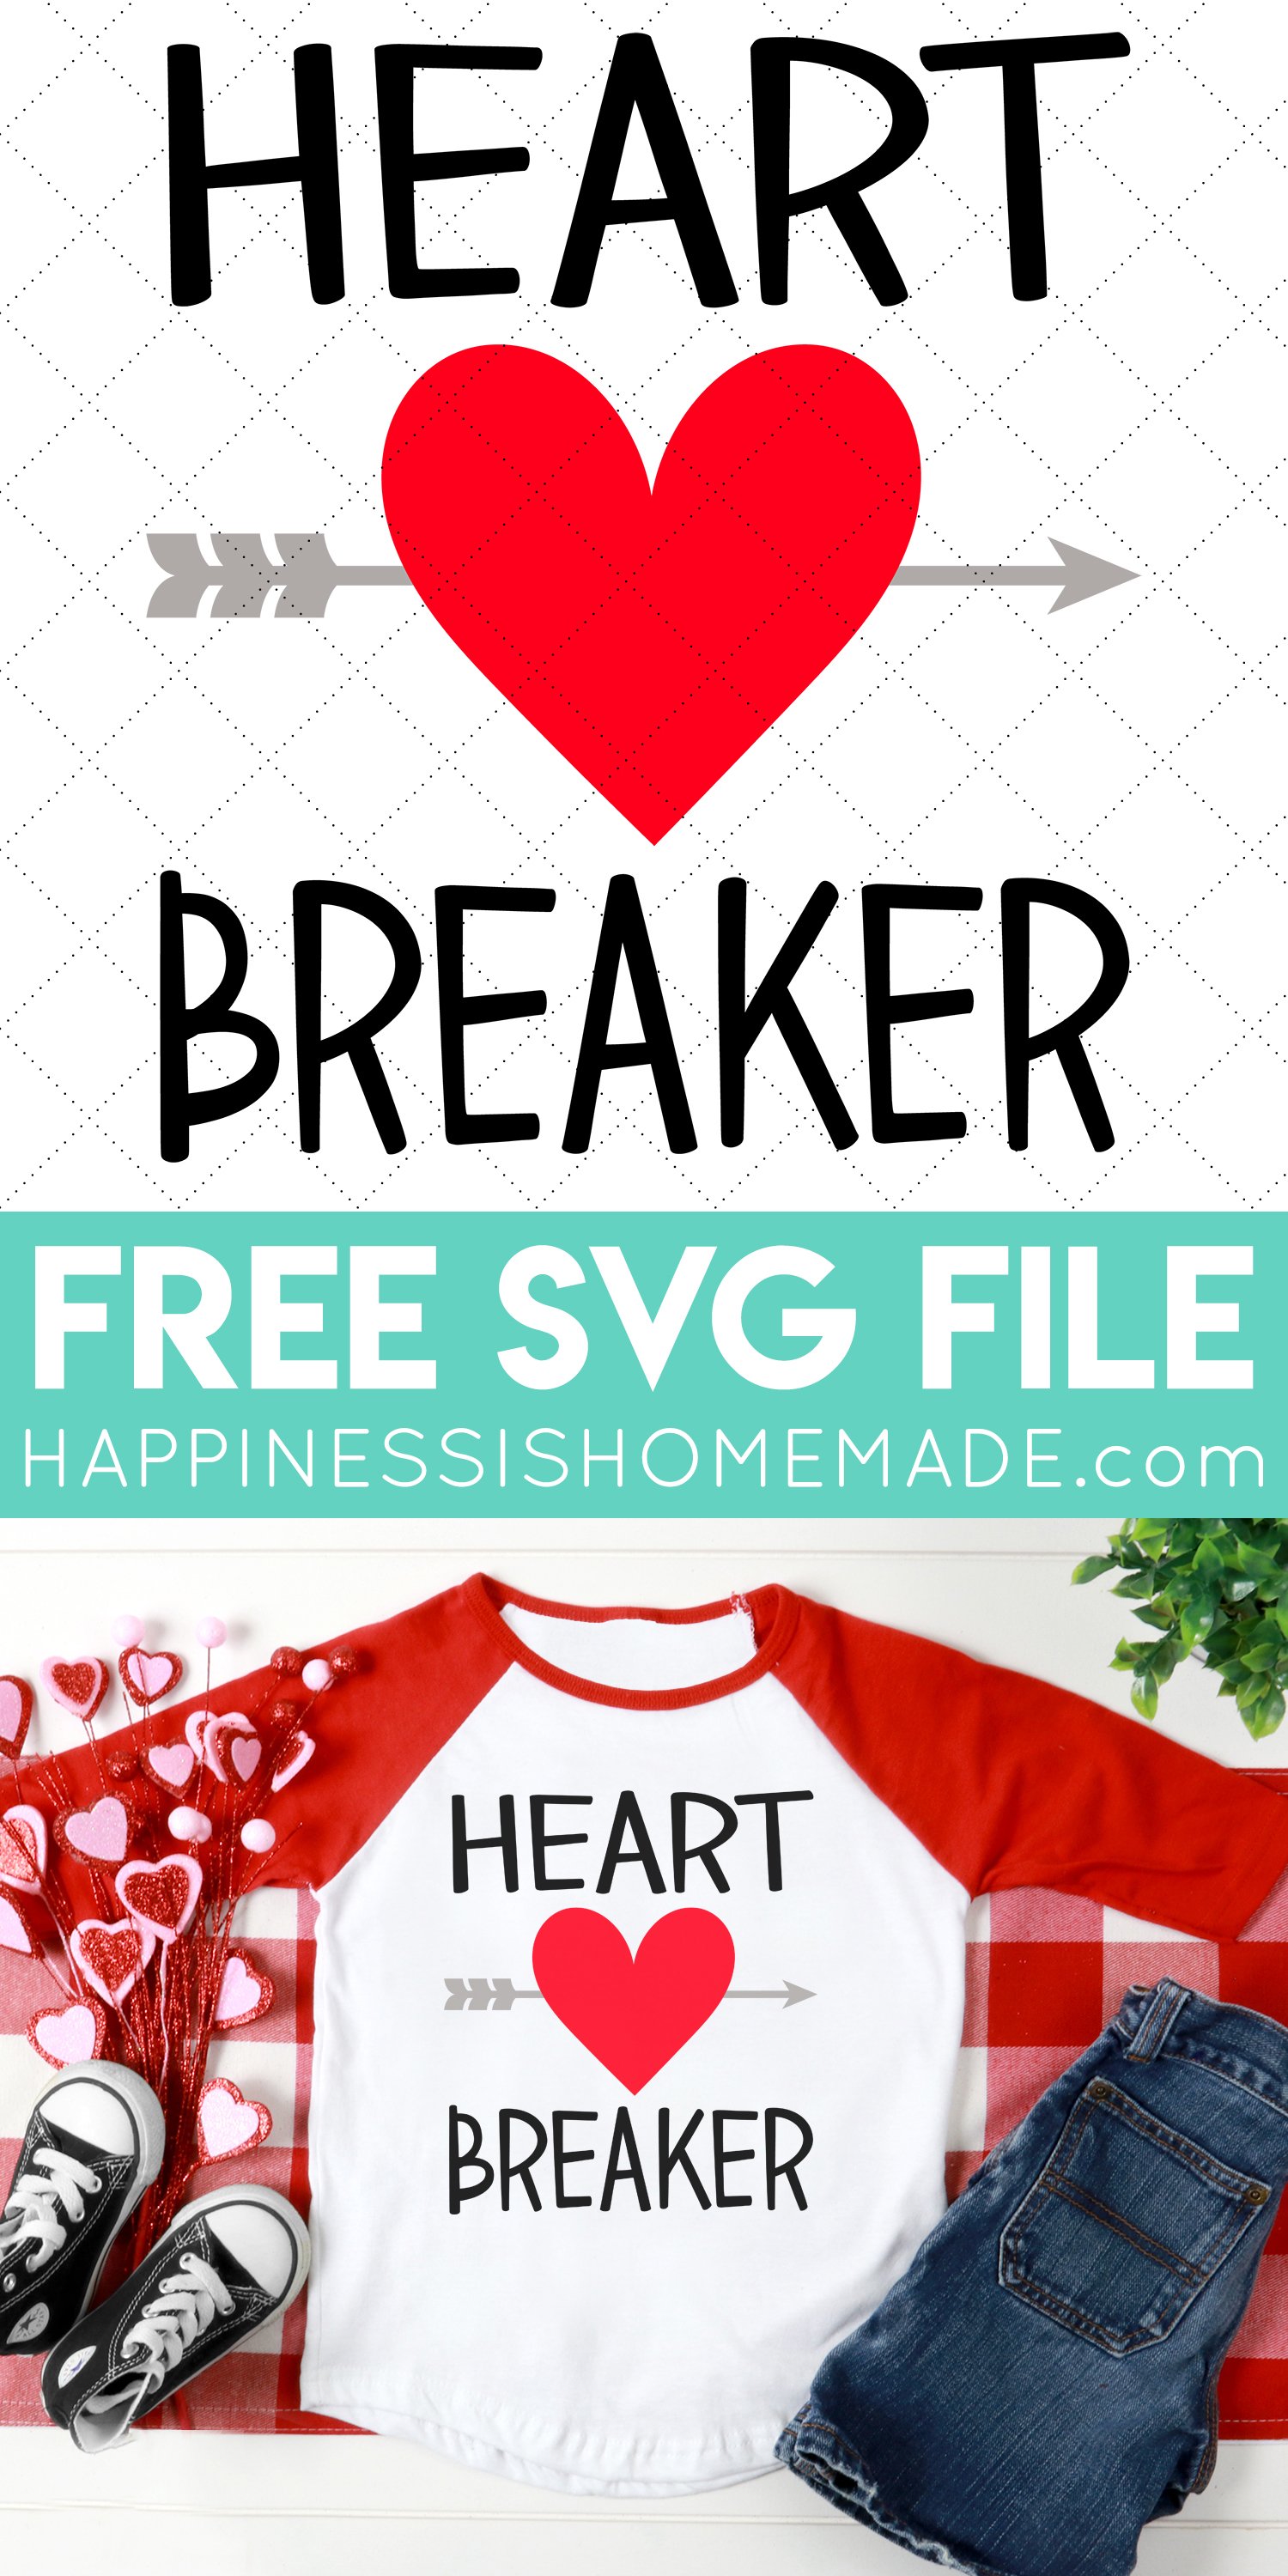 heart breaker free svg file